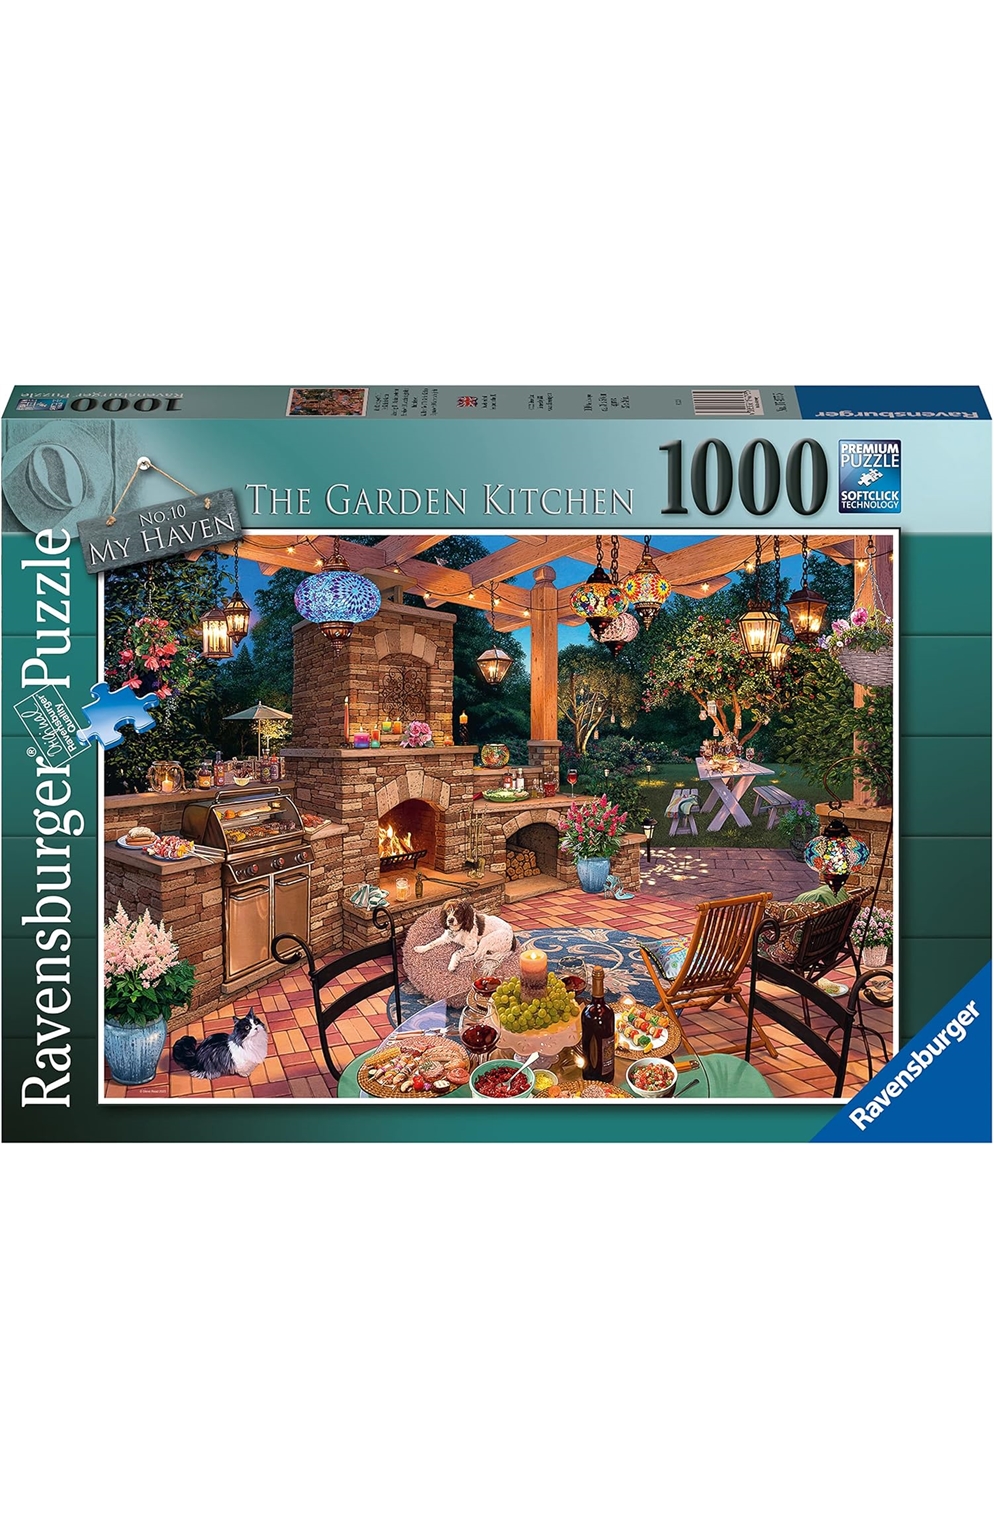 The Garden Kitchen - Ravensburger 1000 Piece Puzzle